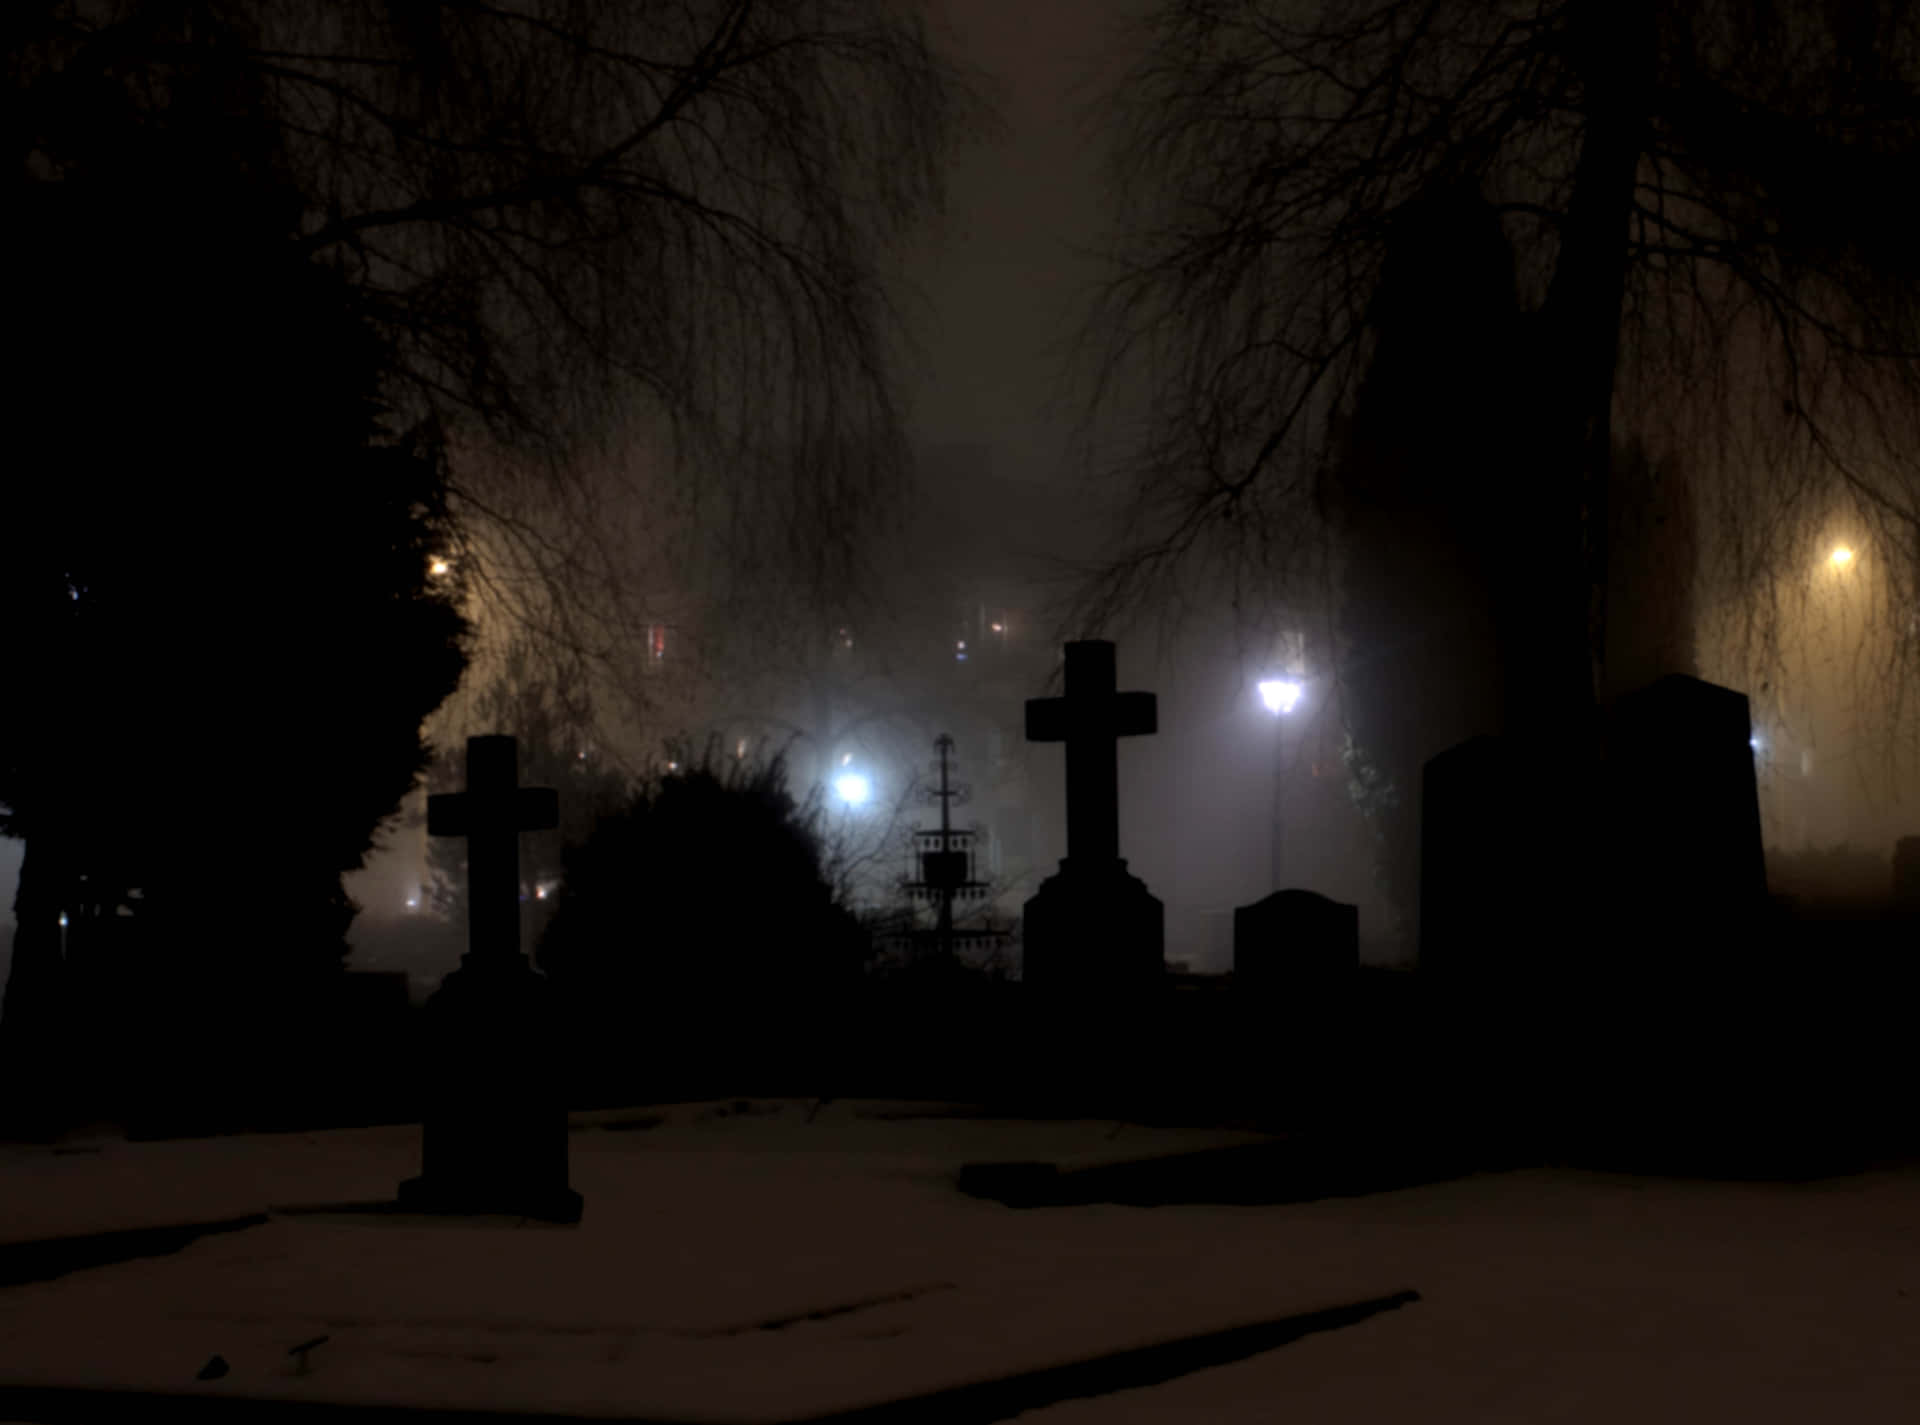 Spooky Halloween night in a graveyard. Wallpaper